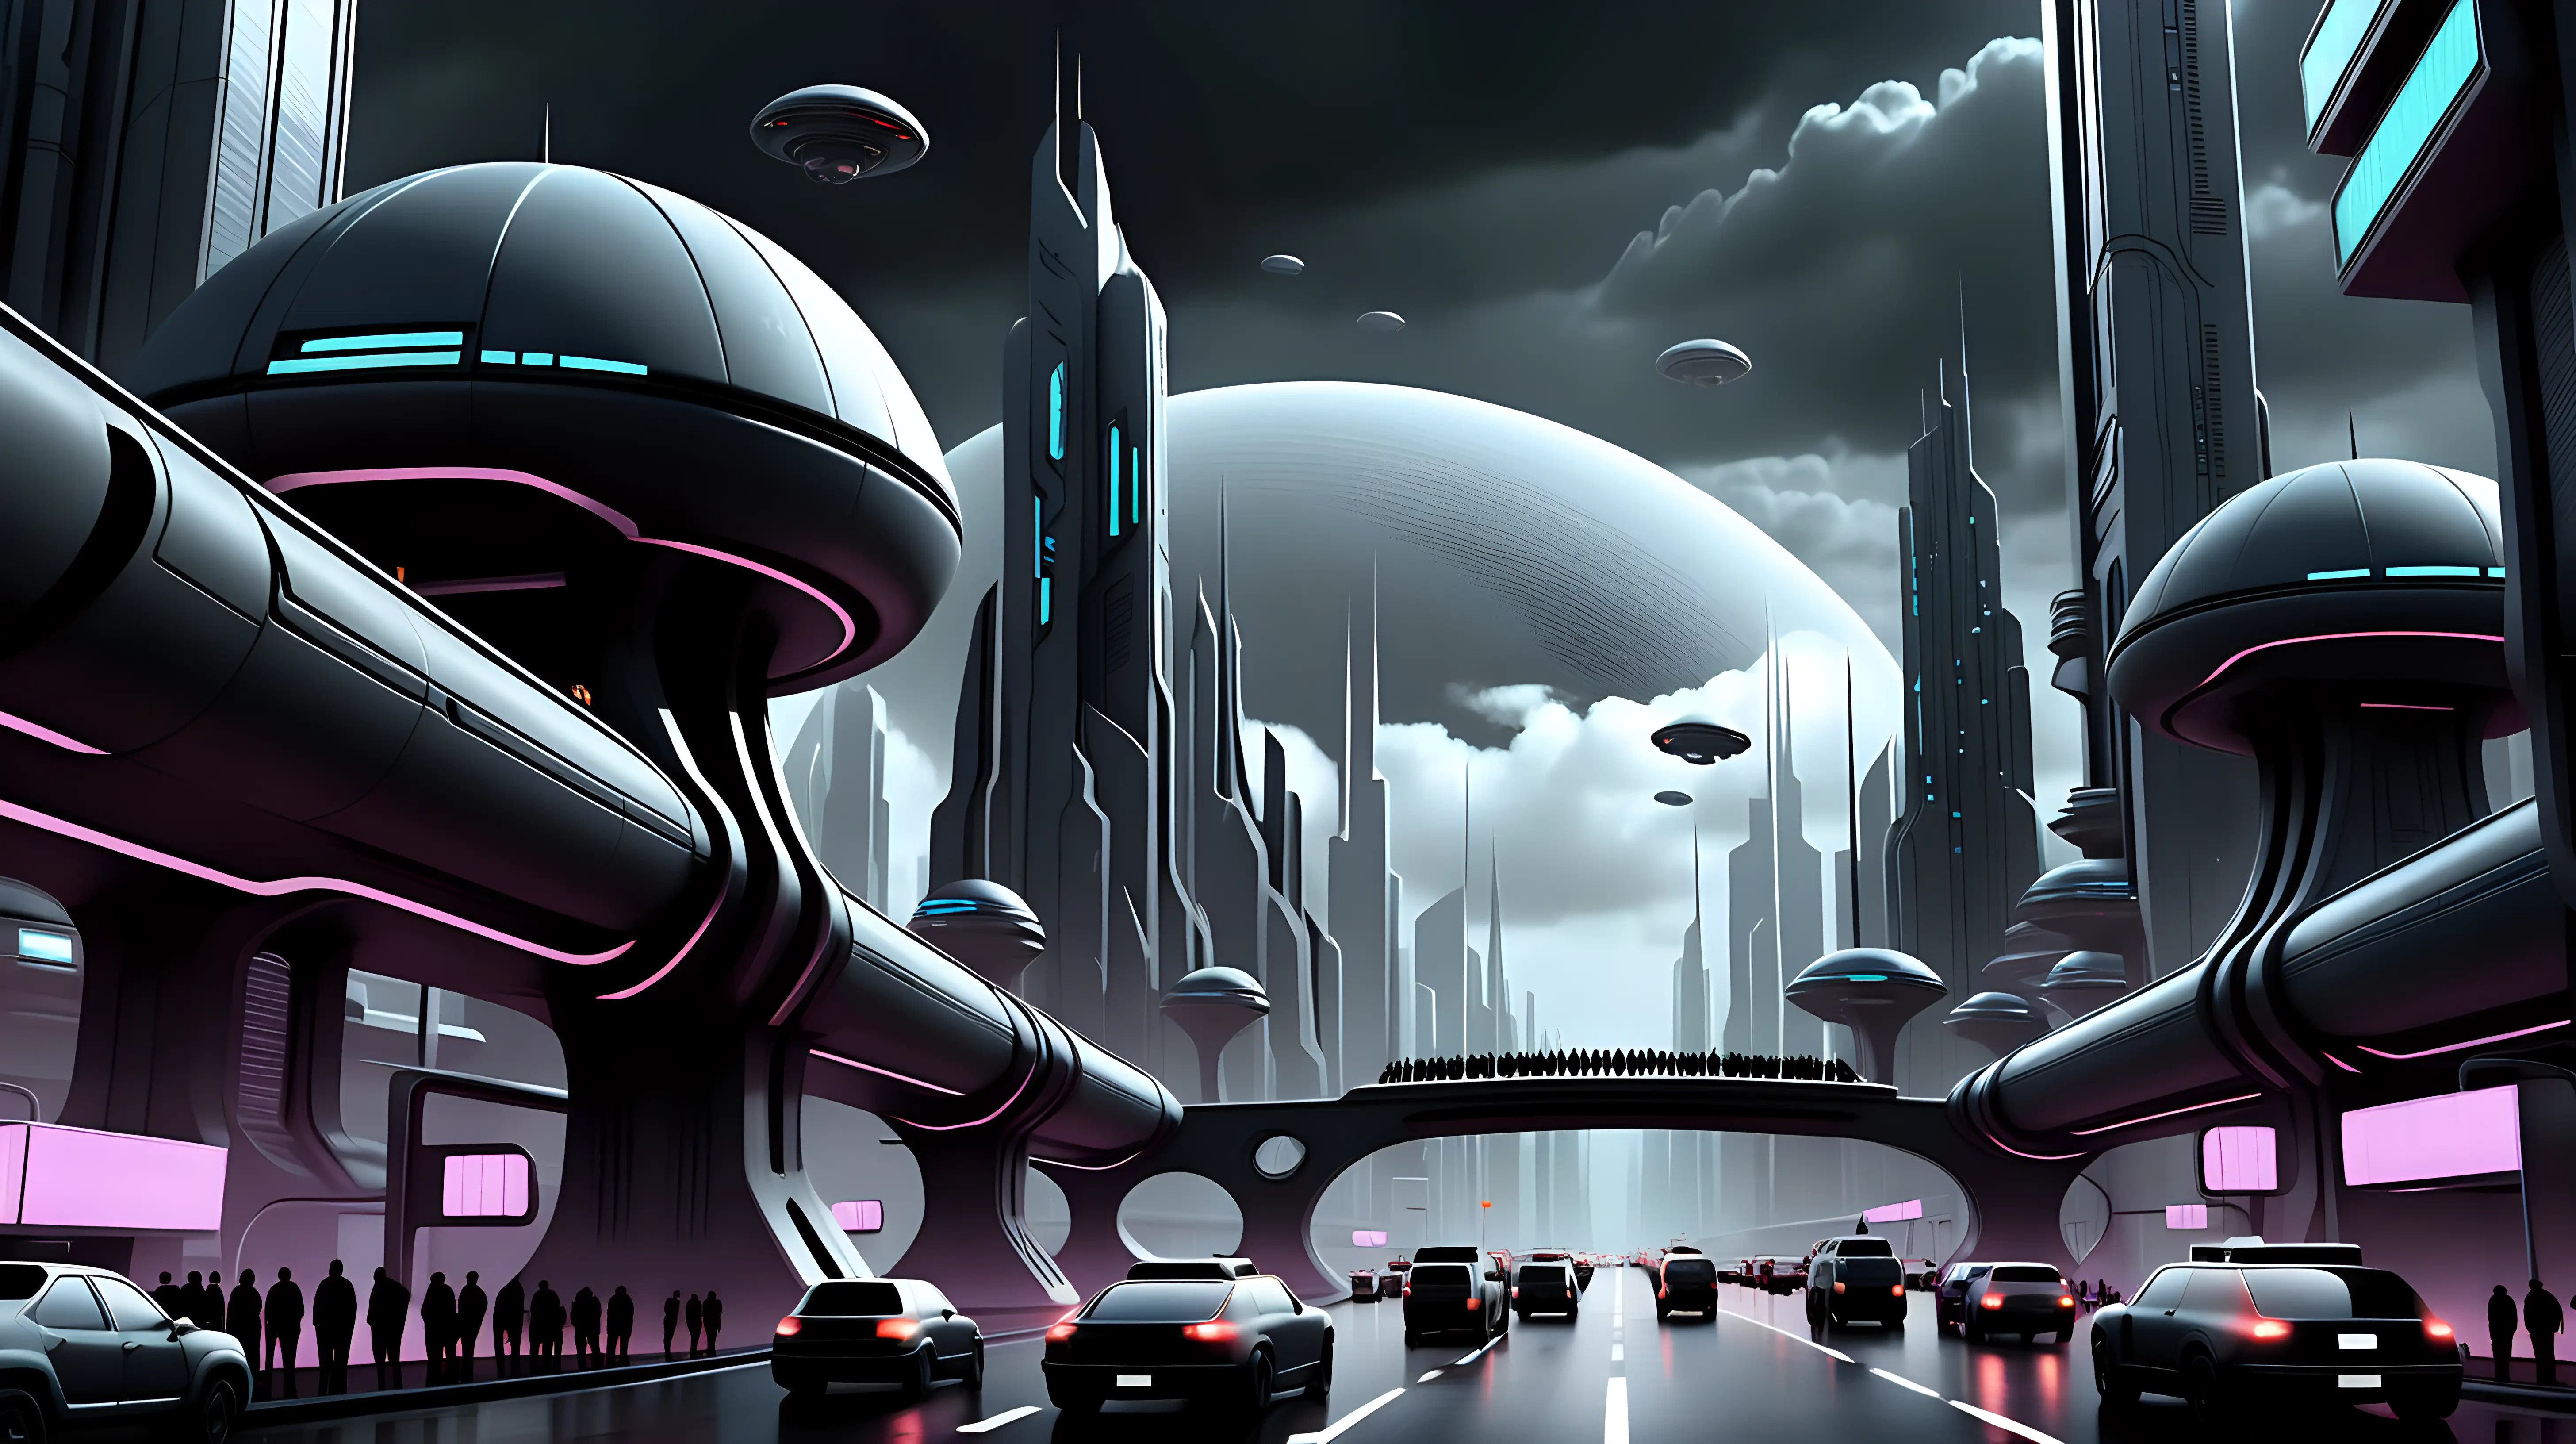 Futuristic city, sci-fi, dark theme, traffic in sky